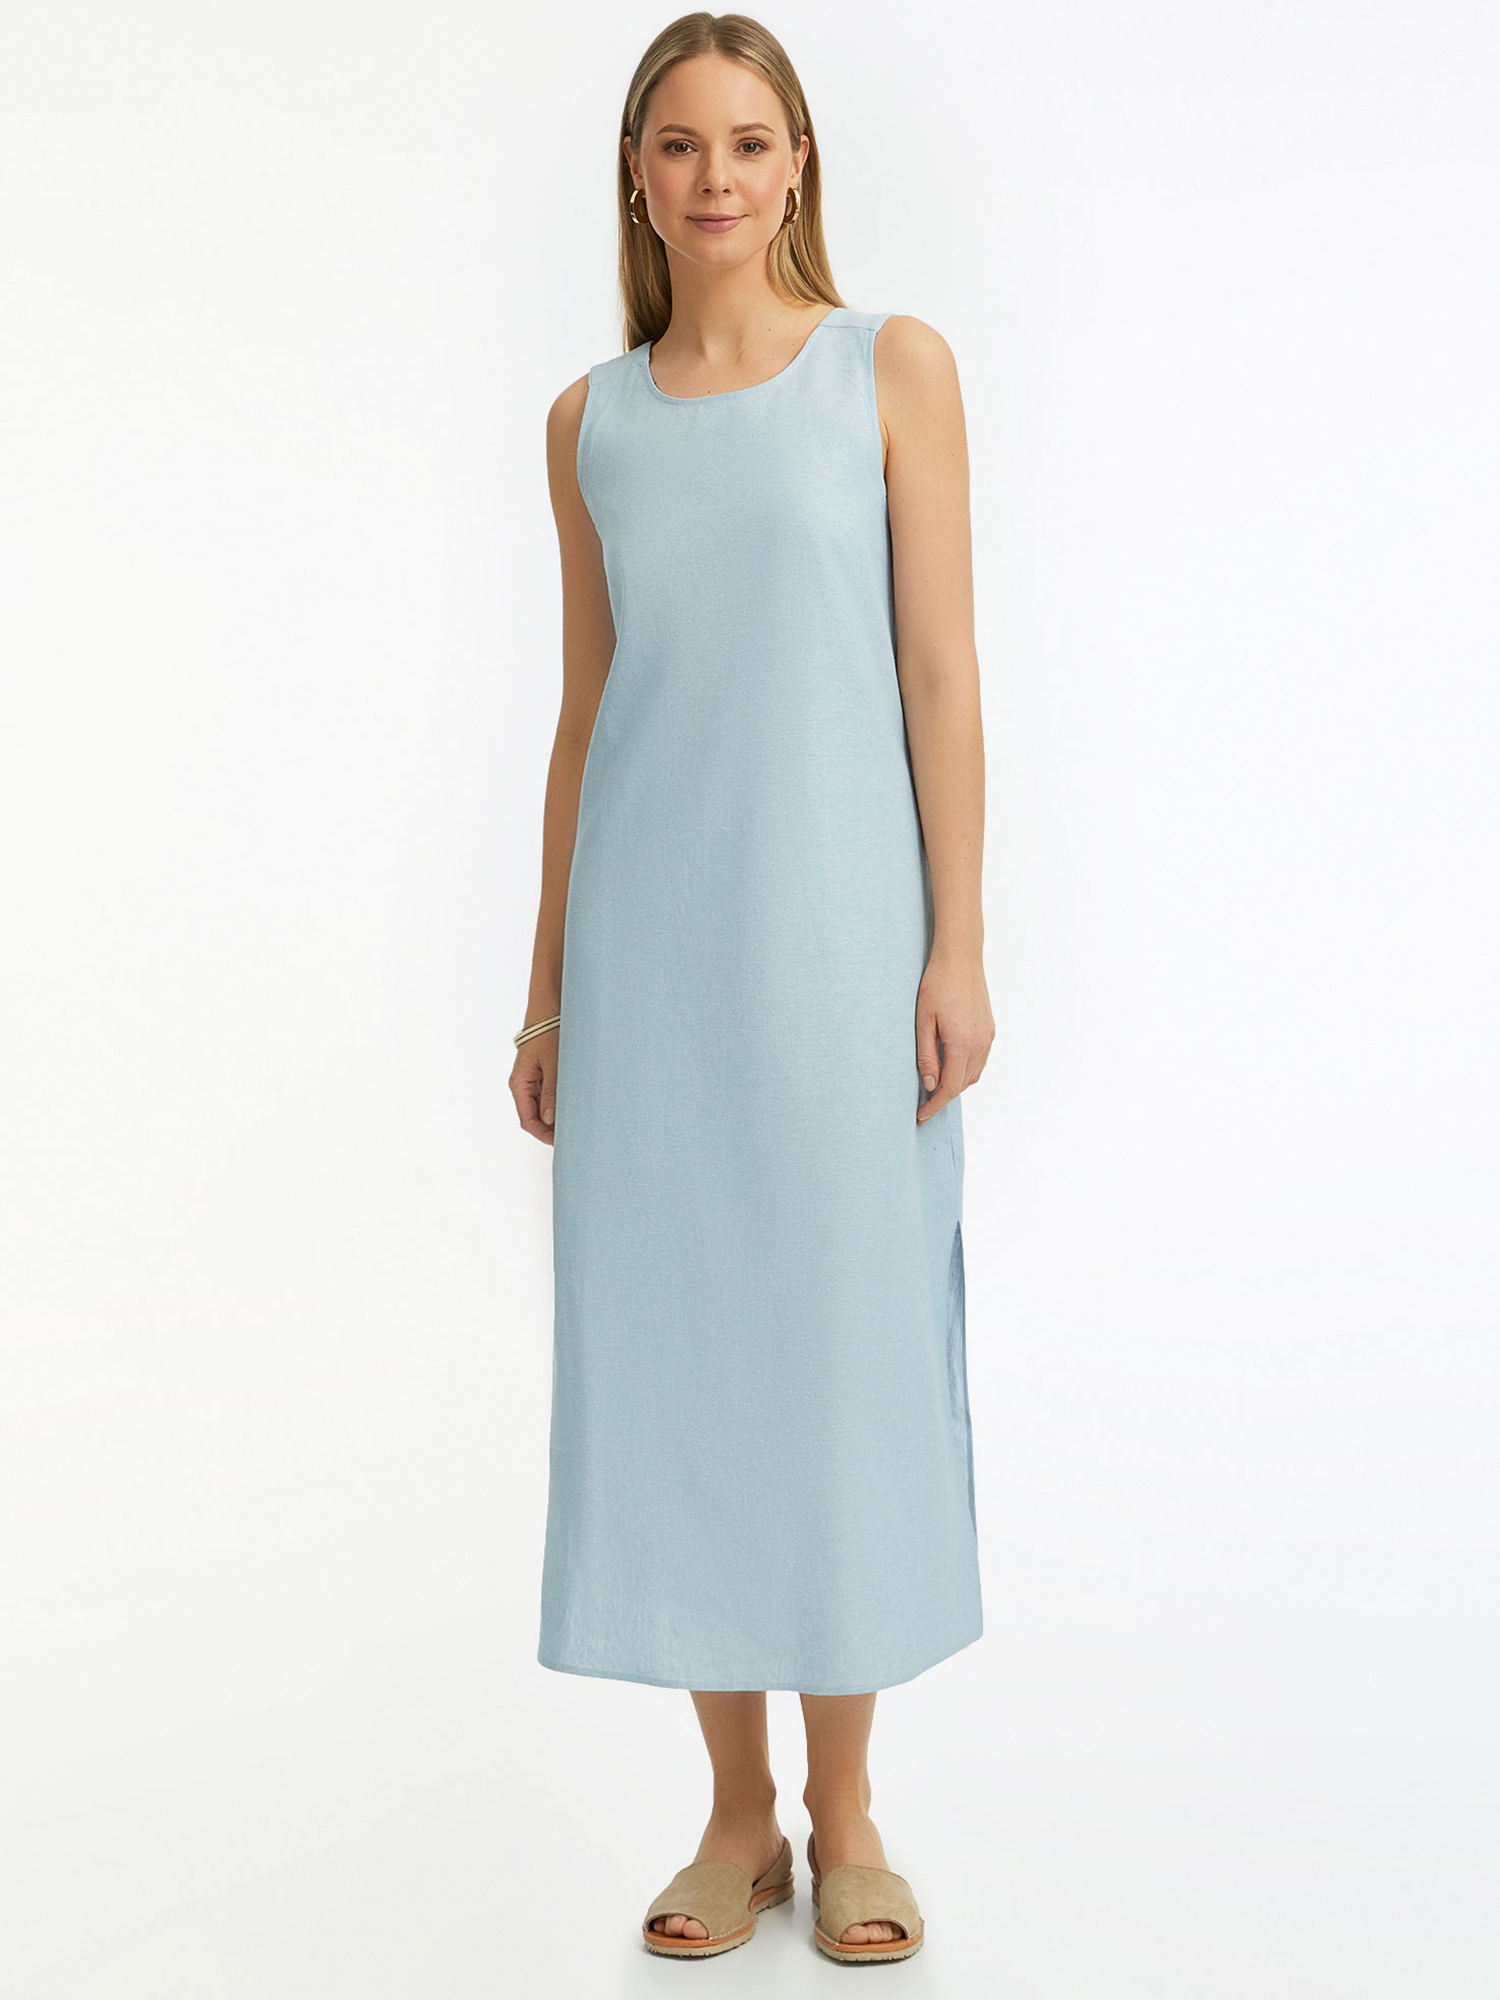 Платье женское oodji 22C01003-2 синее 42